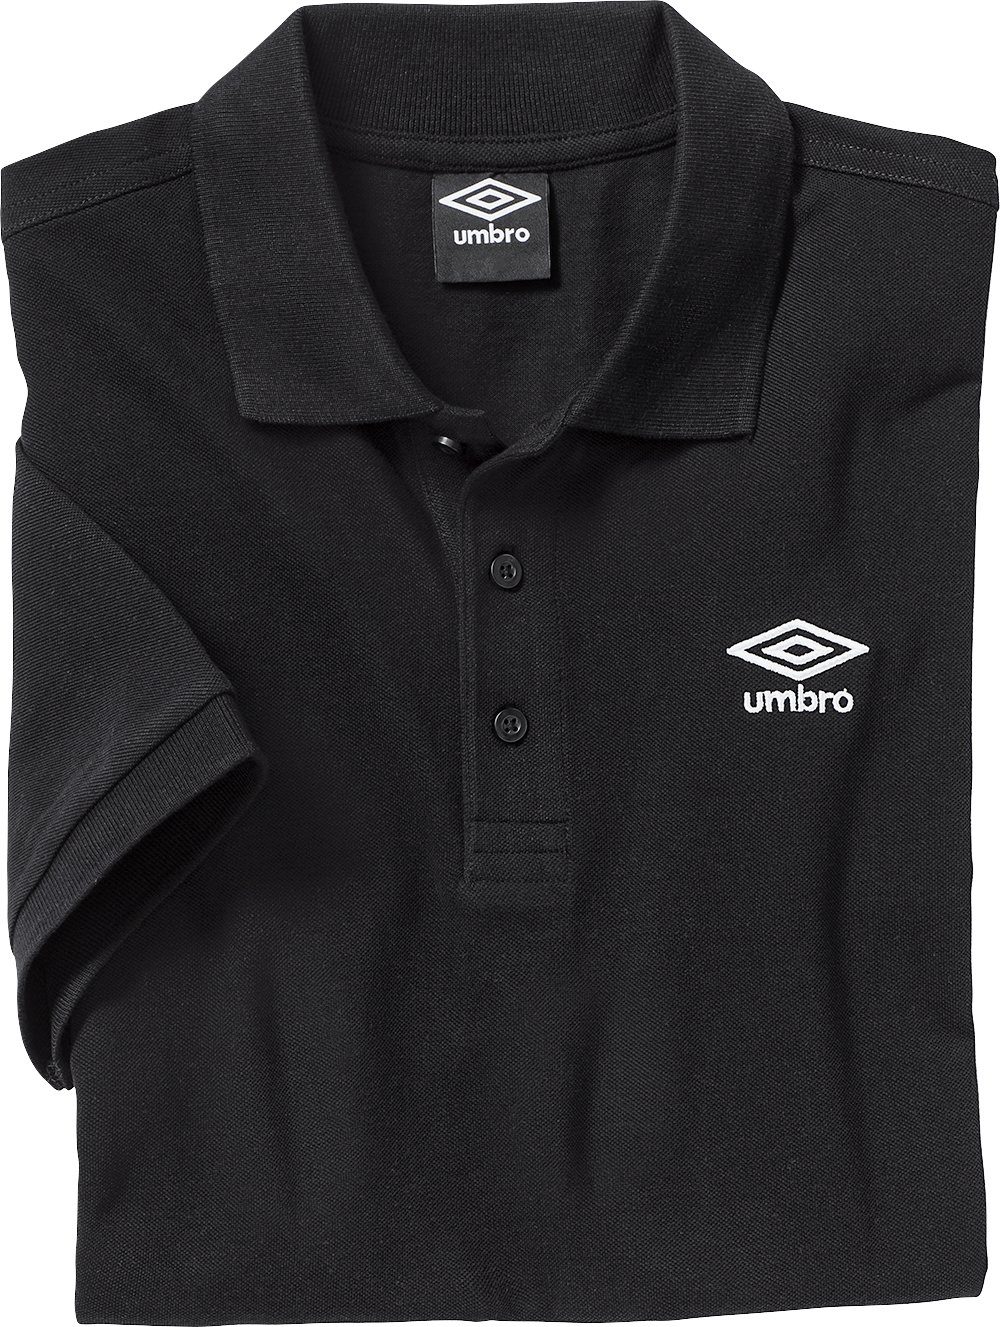 Umbro Poloshirt körniges Piqué-Gewebe aus schwarz Baumwolle